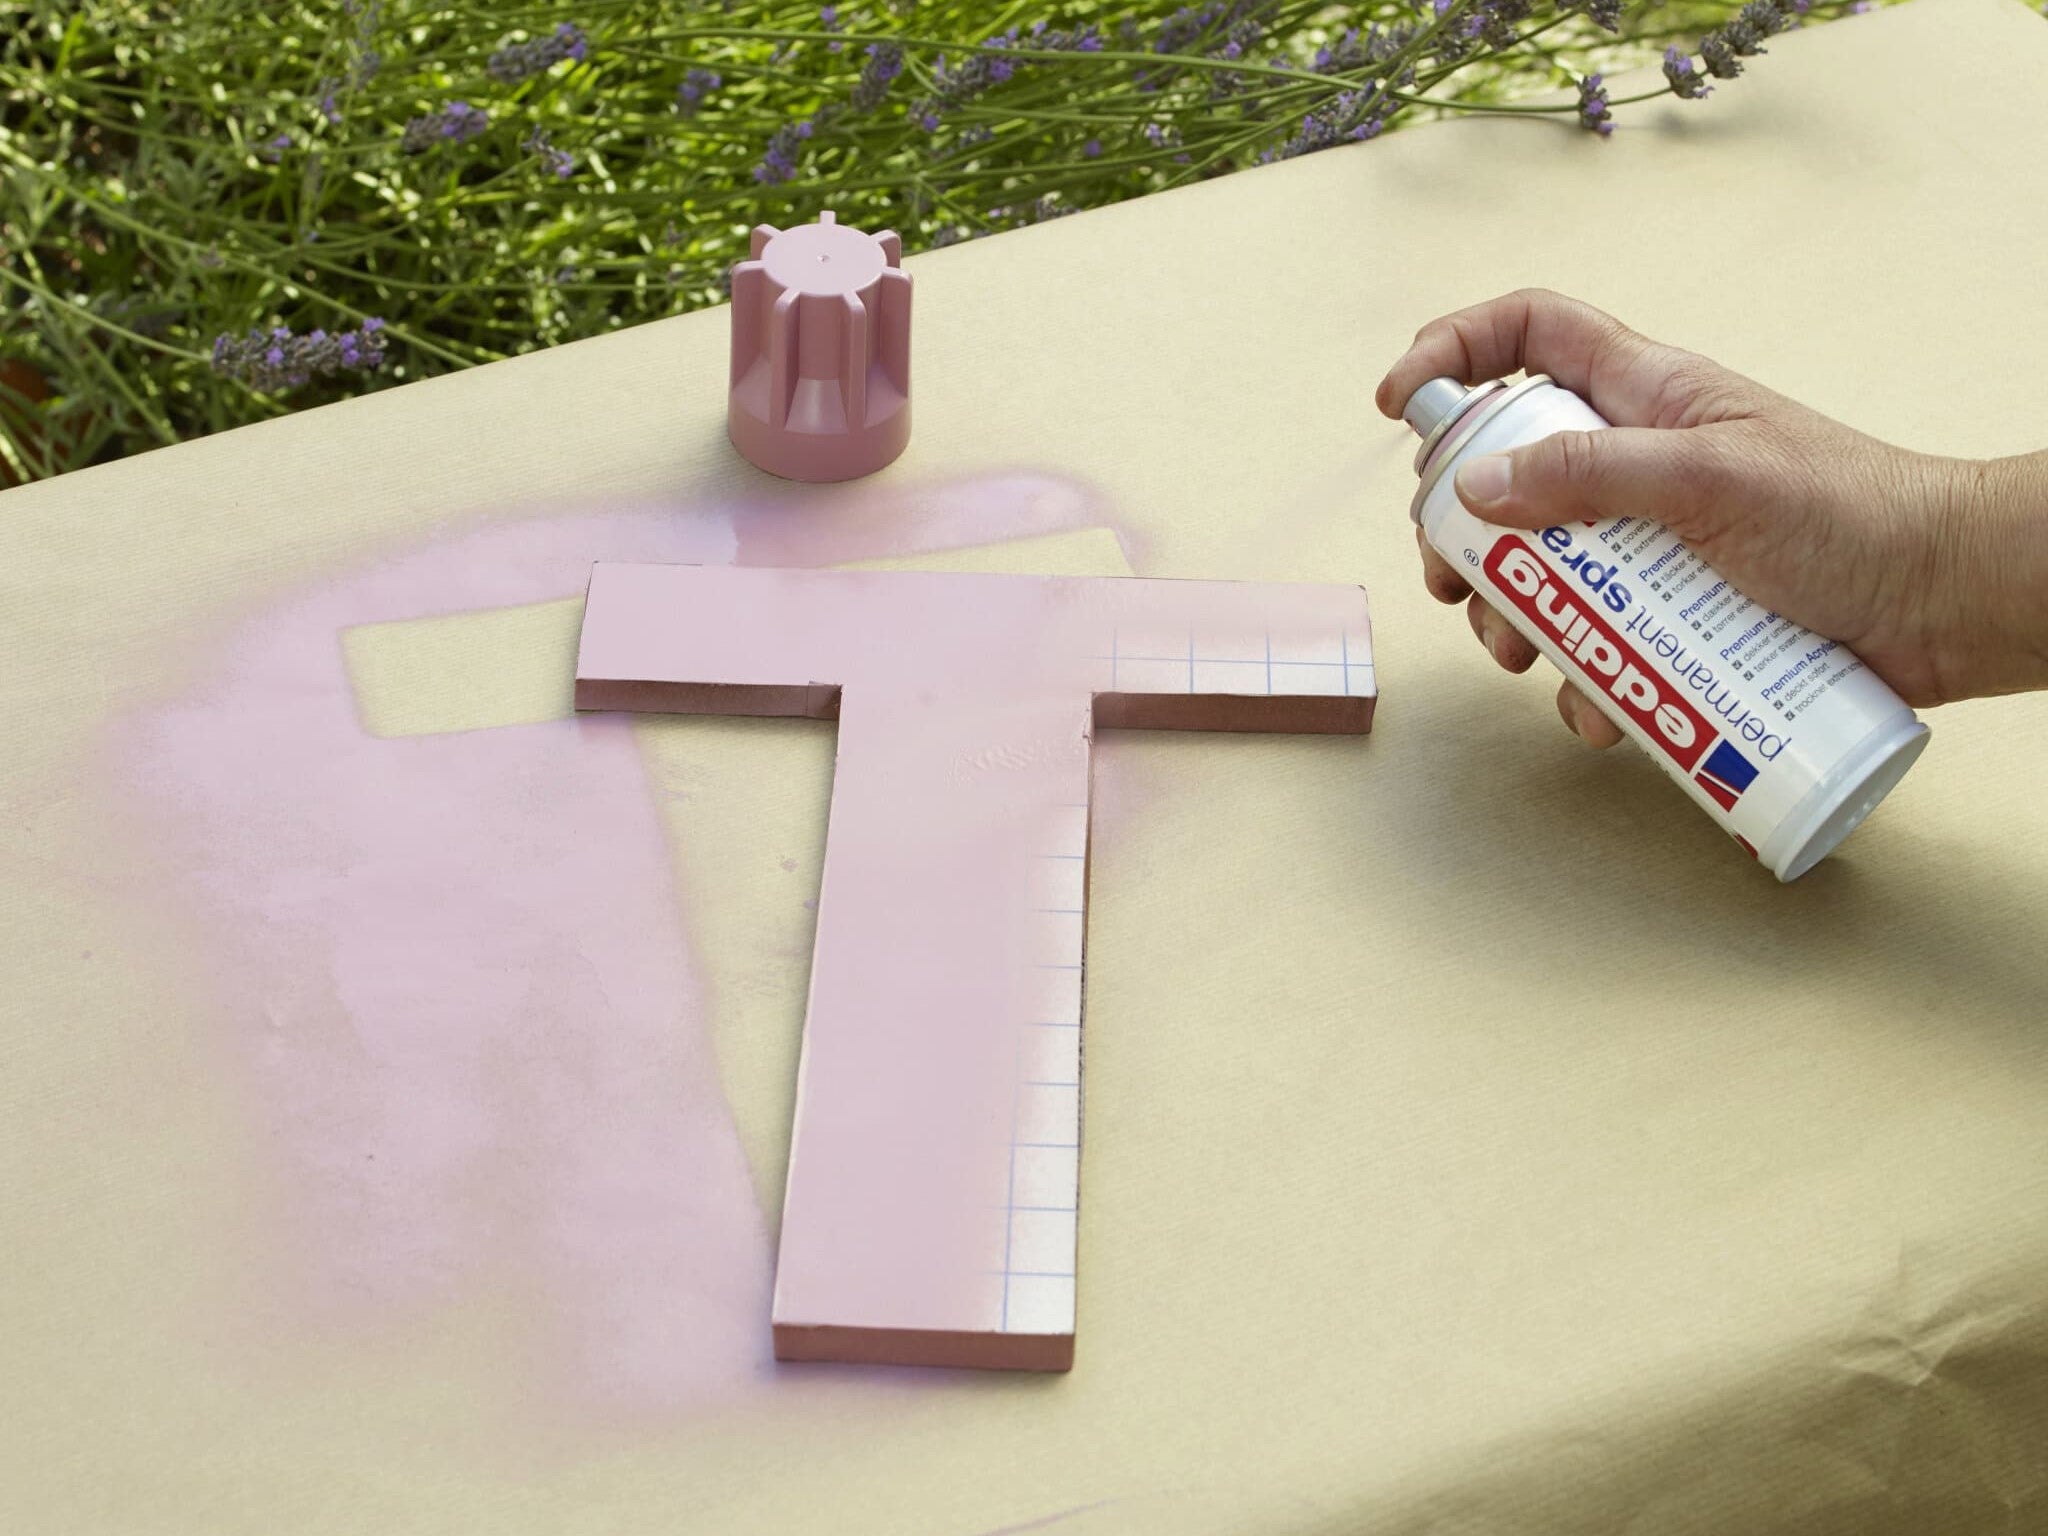 Besprühen Sie einen Holzbuchstaben „t“ mit einem zarten Rosaton und verwenden Sie edding 5200 Permanentspray Acryllack Pastell & sanfte Farben auf einer papierbedeckten Oberfläche im Freien, während eine Hand die Farbsprühdose in Aktion hält.